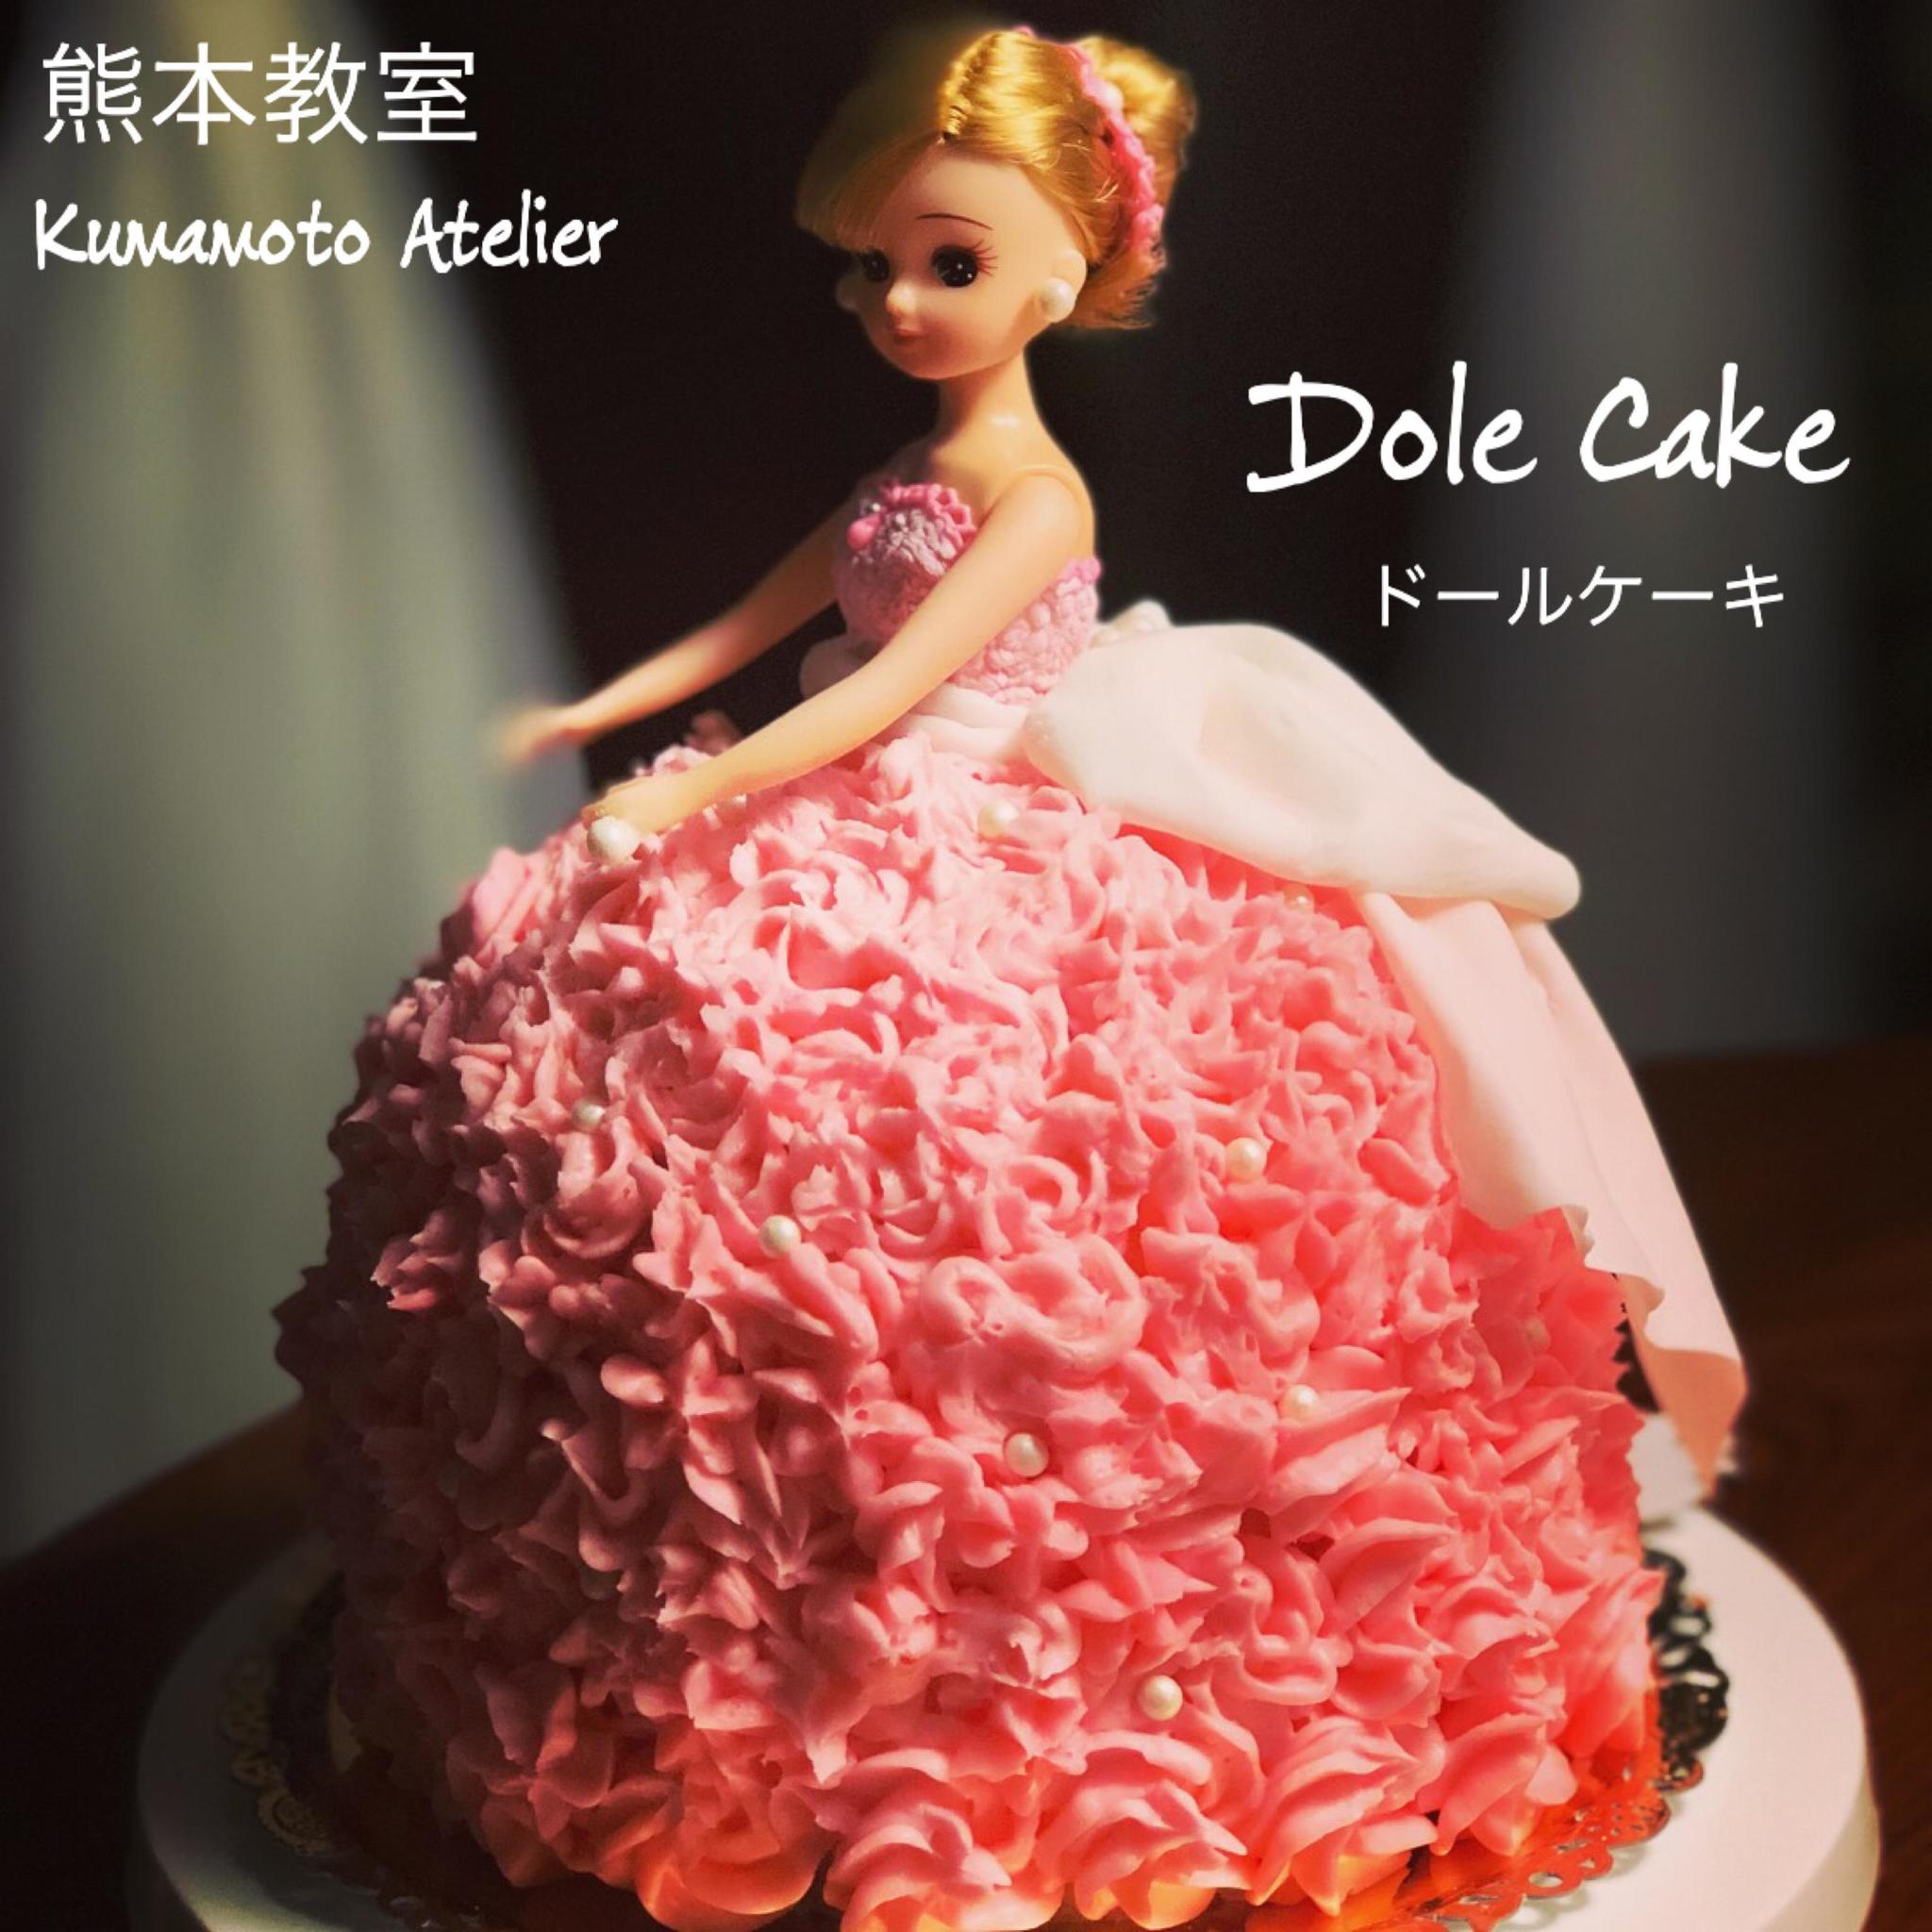 ドールケーキ 開催 Atelier Moliere 熊本県熊本市 の21年3月レッスン情報 料理教室検索サイト クスパ